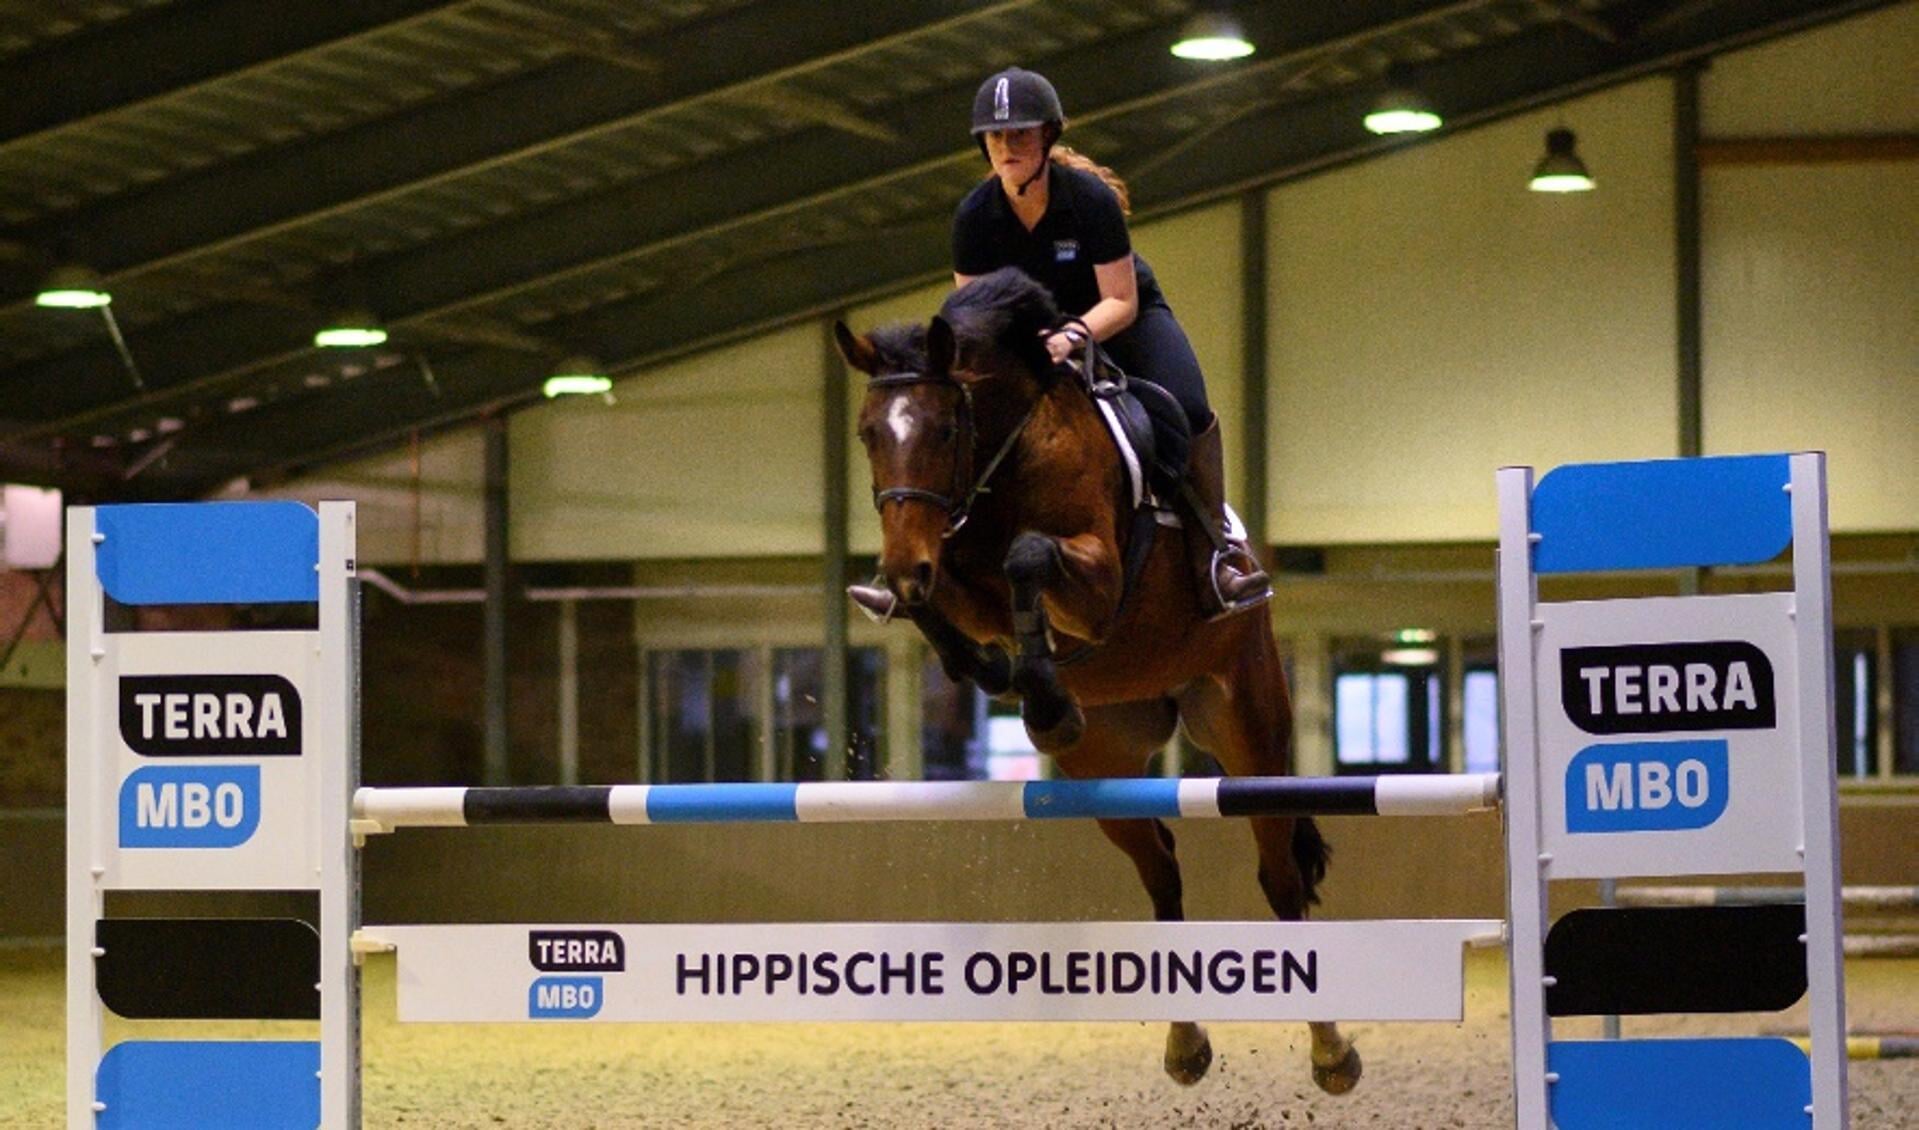 Hippische opleidingen bij maak van je passie voor paarden jouw beroep! | Het onafhankelijke